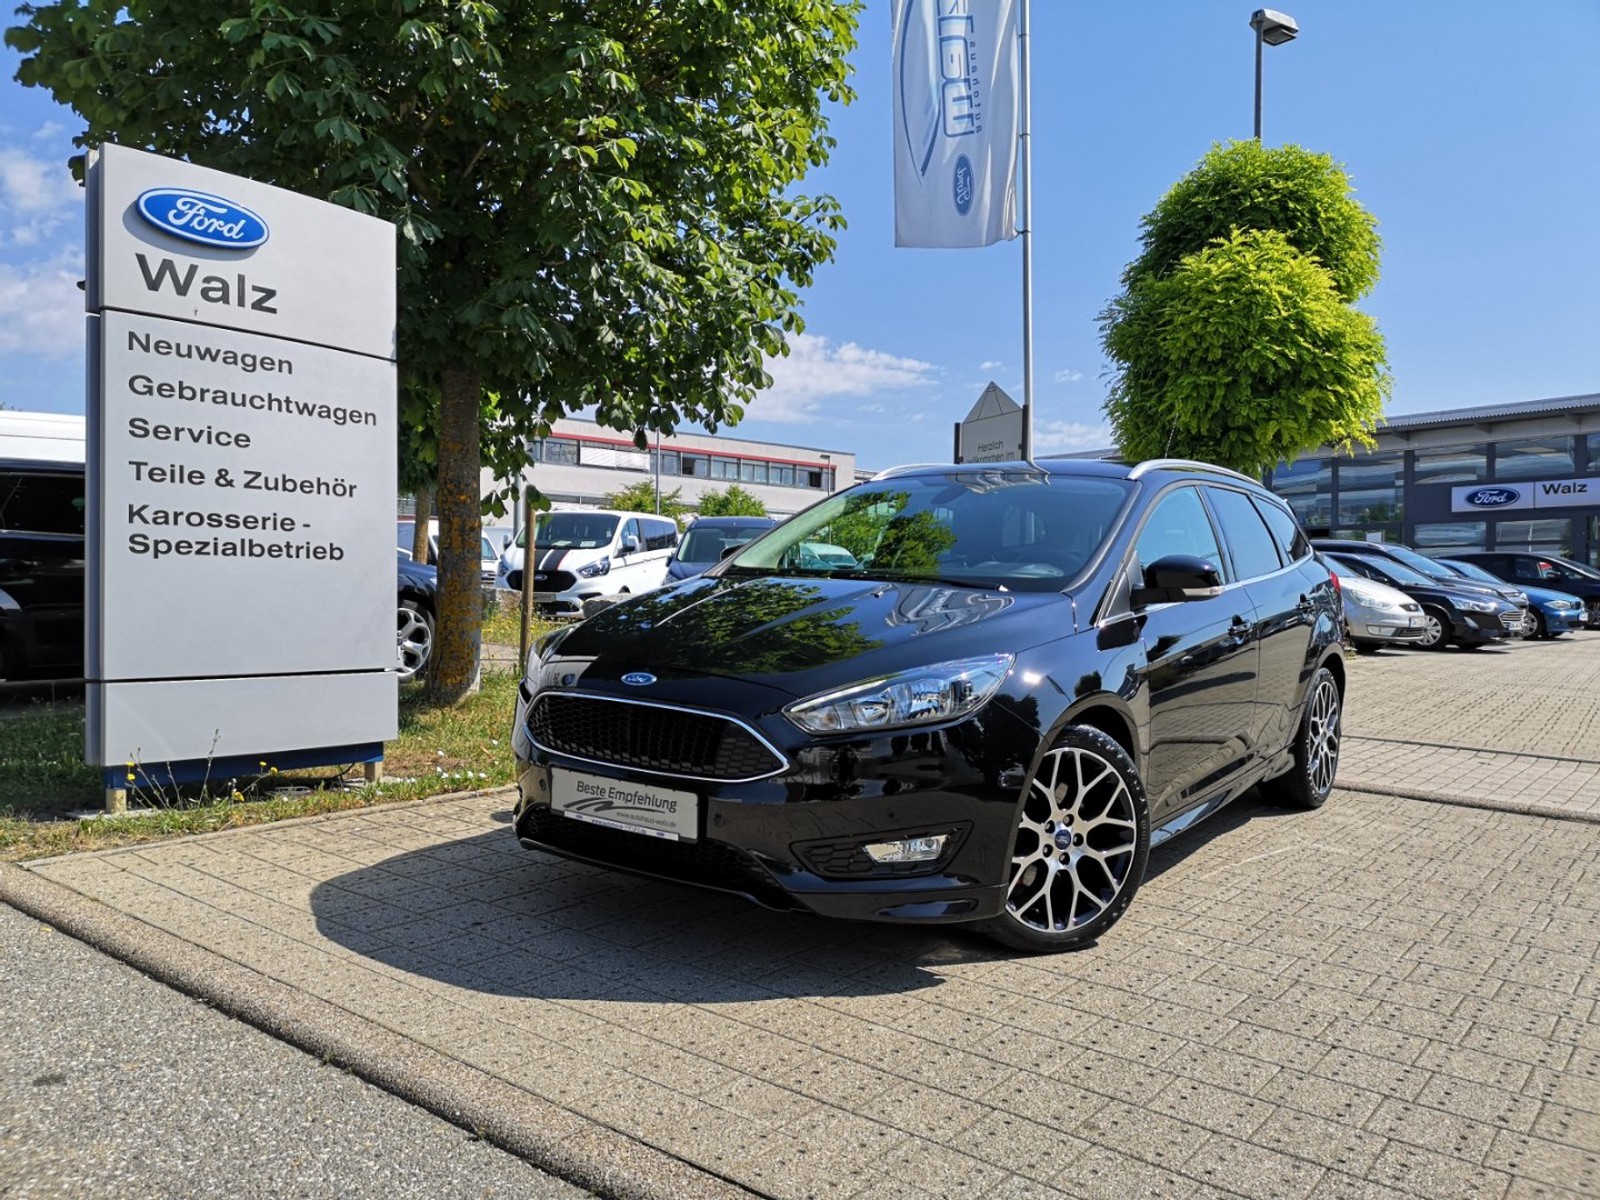 Ford Focus Turnier Titanium Gebraucht Kaufen In Nagold Preis 13490 Eur Int Nr 51542 Verkauft